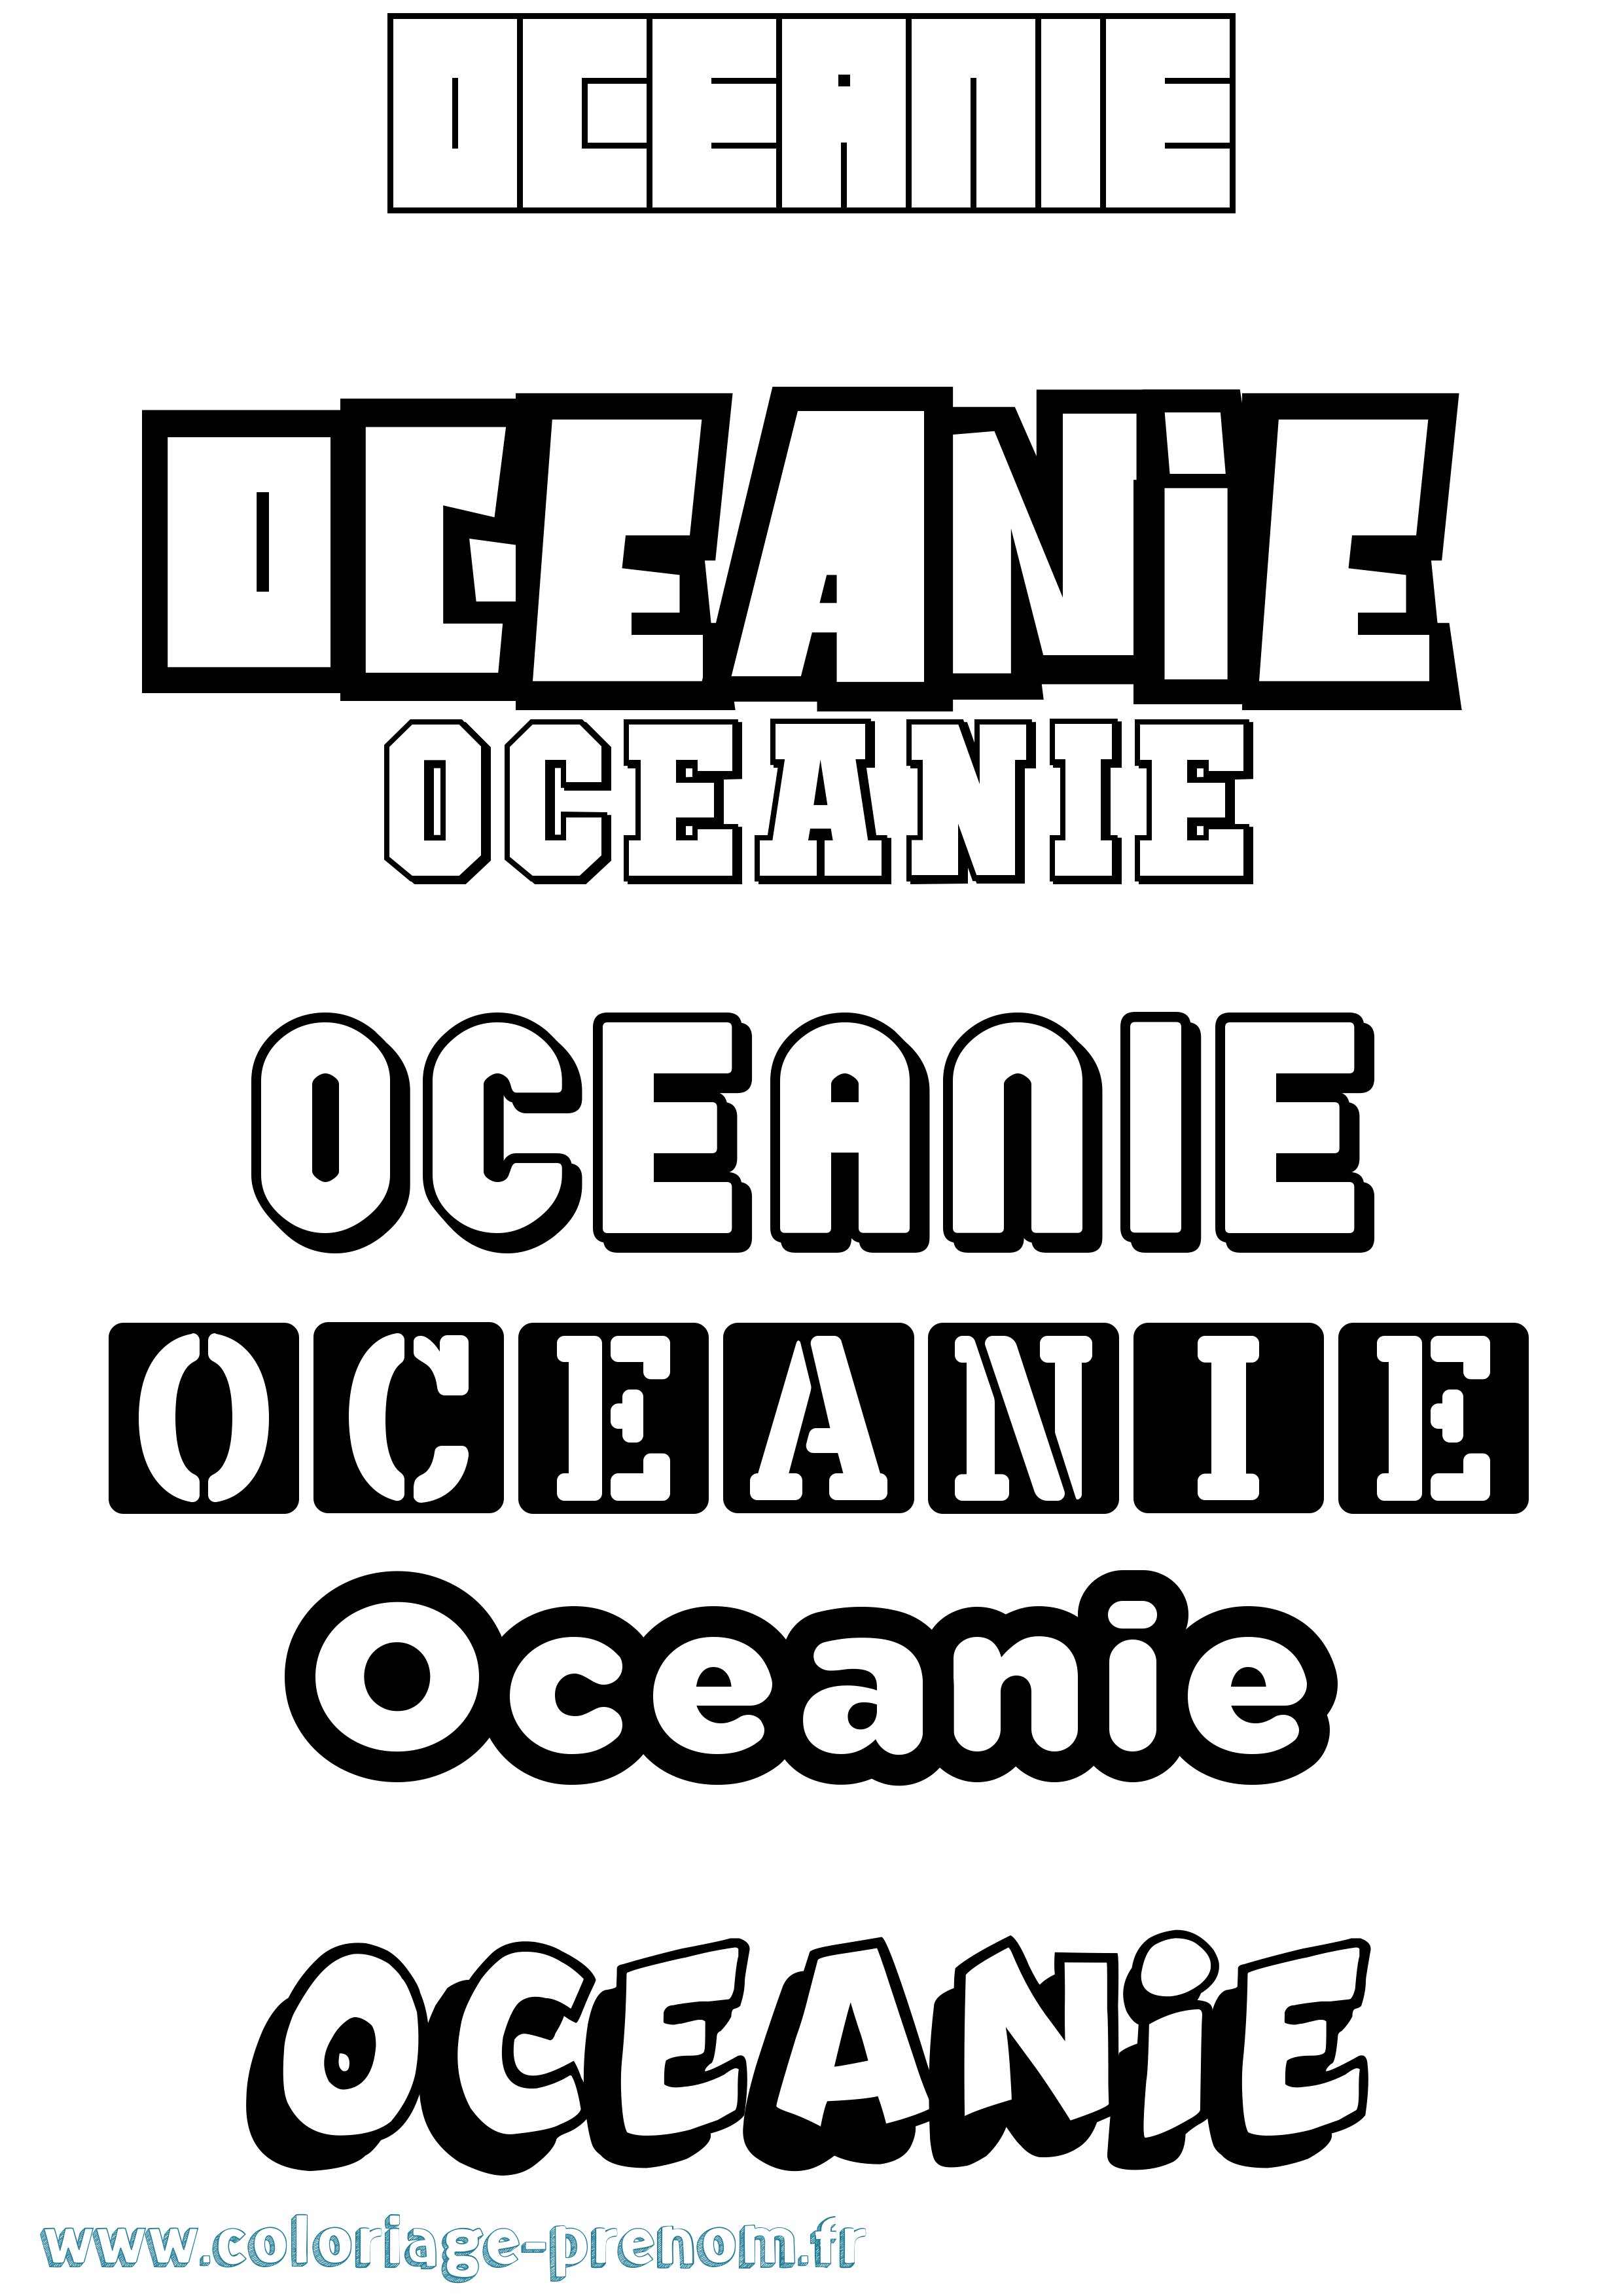 Coloriage prénom Oceanie